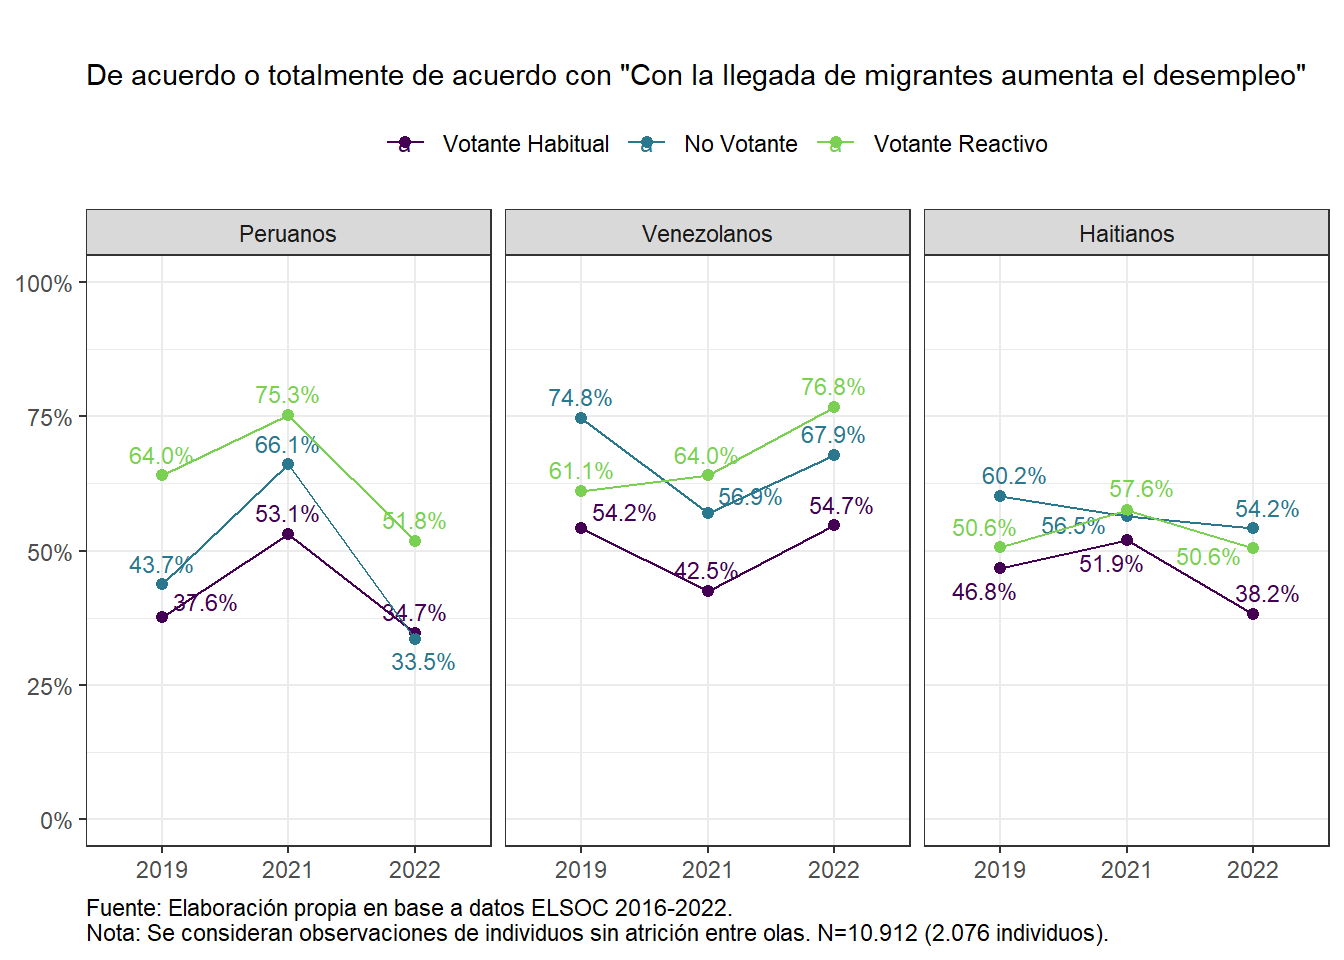 Inmigración y amenaza hacia el desempleo, según nacionalidad de migrantes y perfil de votante